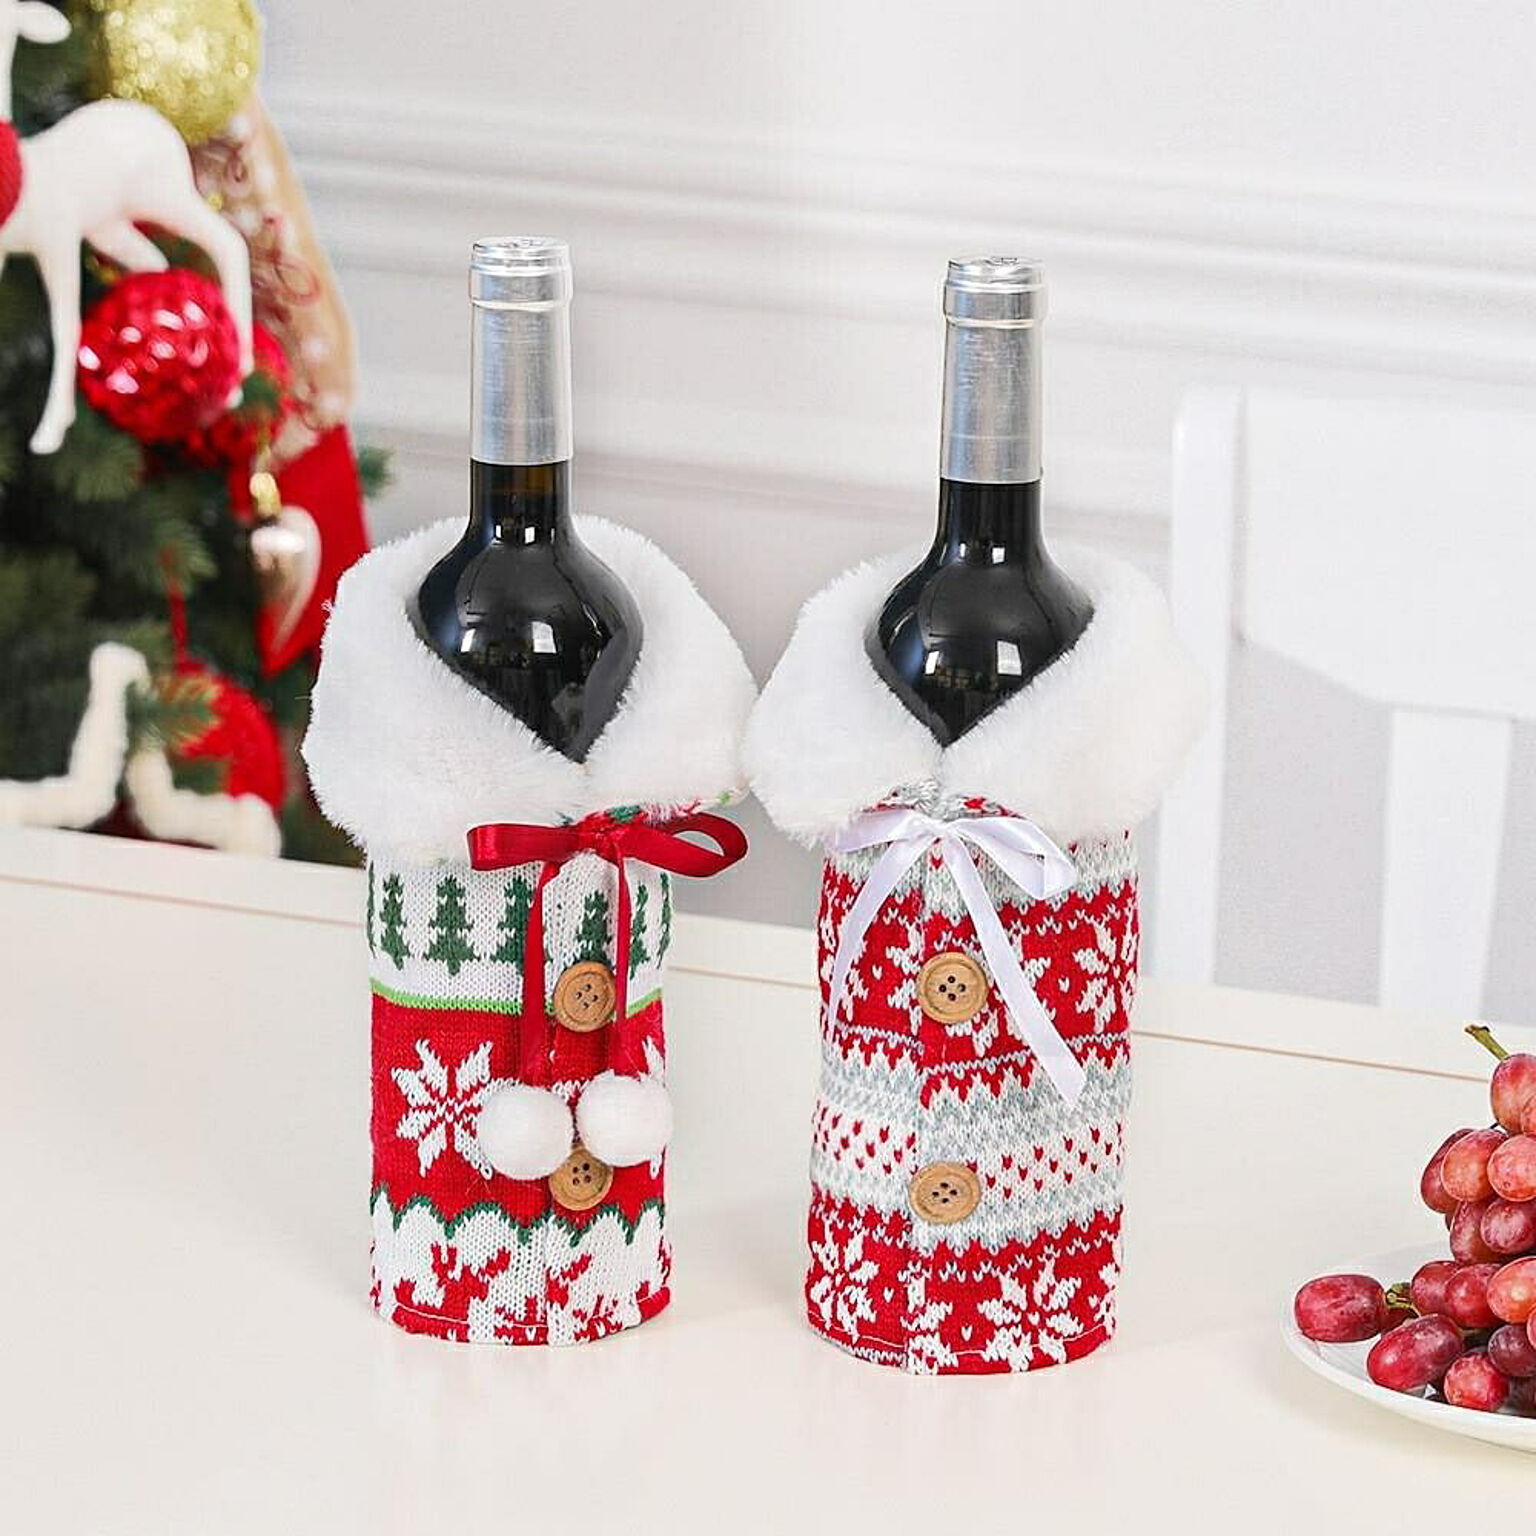 ニットワインボトルカバー 在庫限り 赤リボンor白リボン サンタクロースデザイン クリスマスパーティーデコレーション